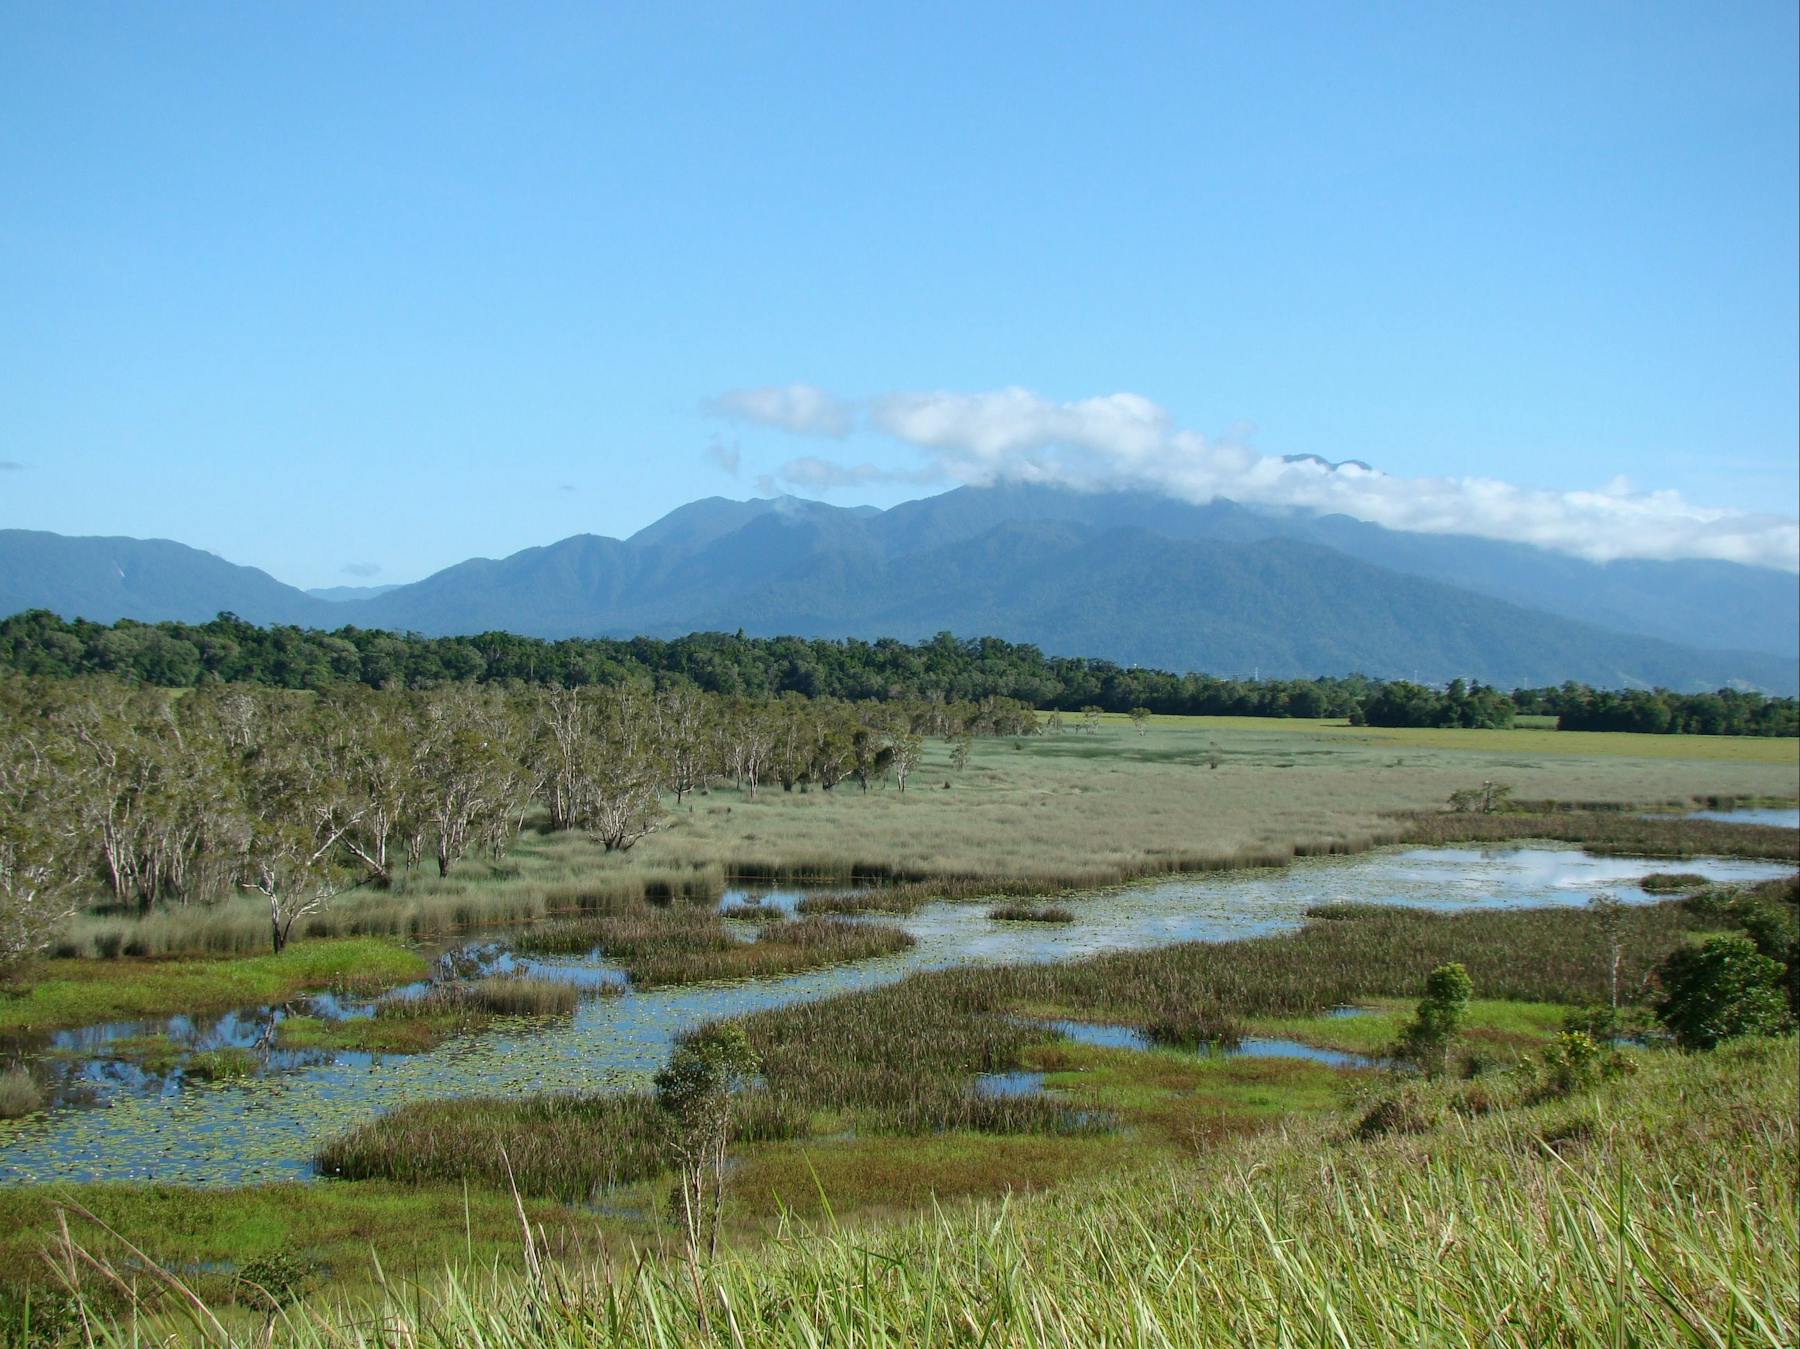 Swamp with mountainous backdrop at Enbenangee Swamp.